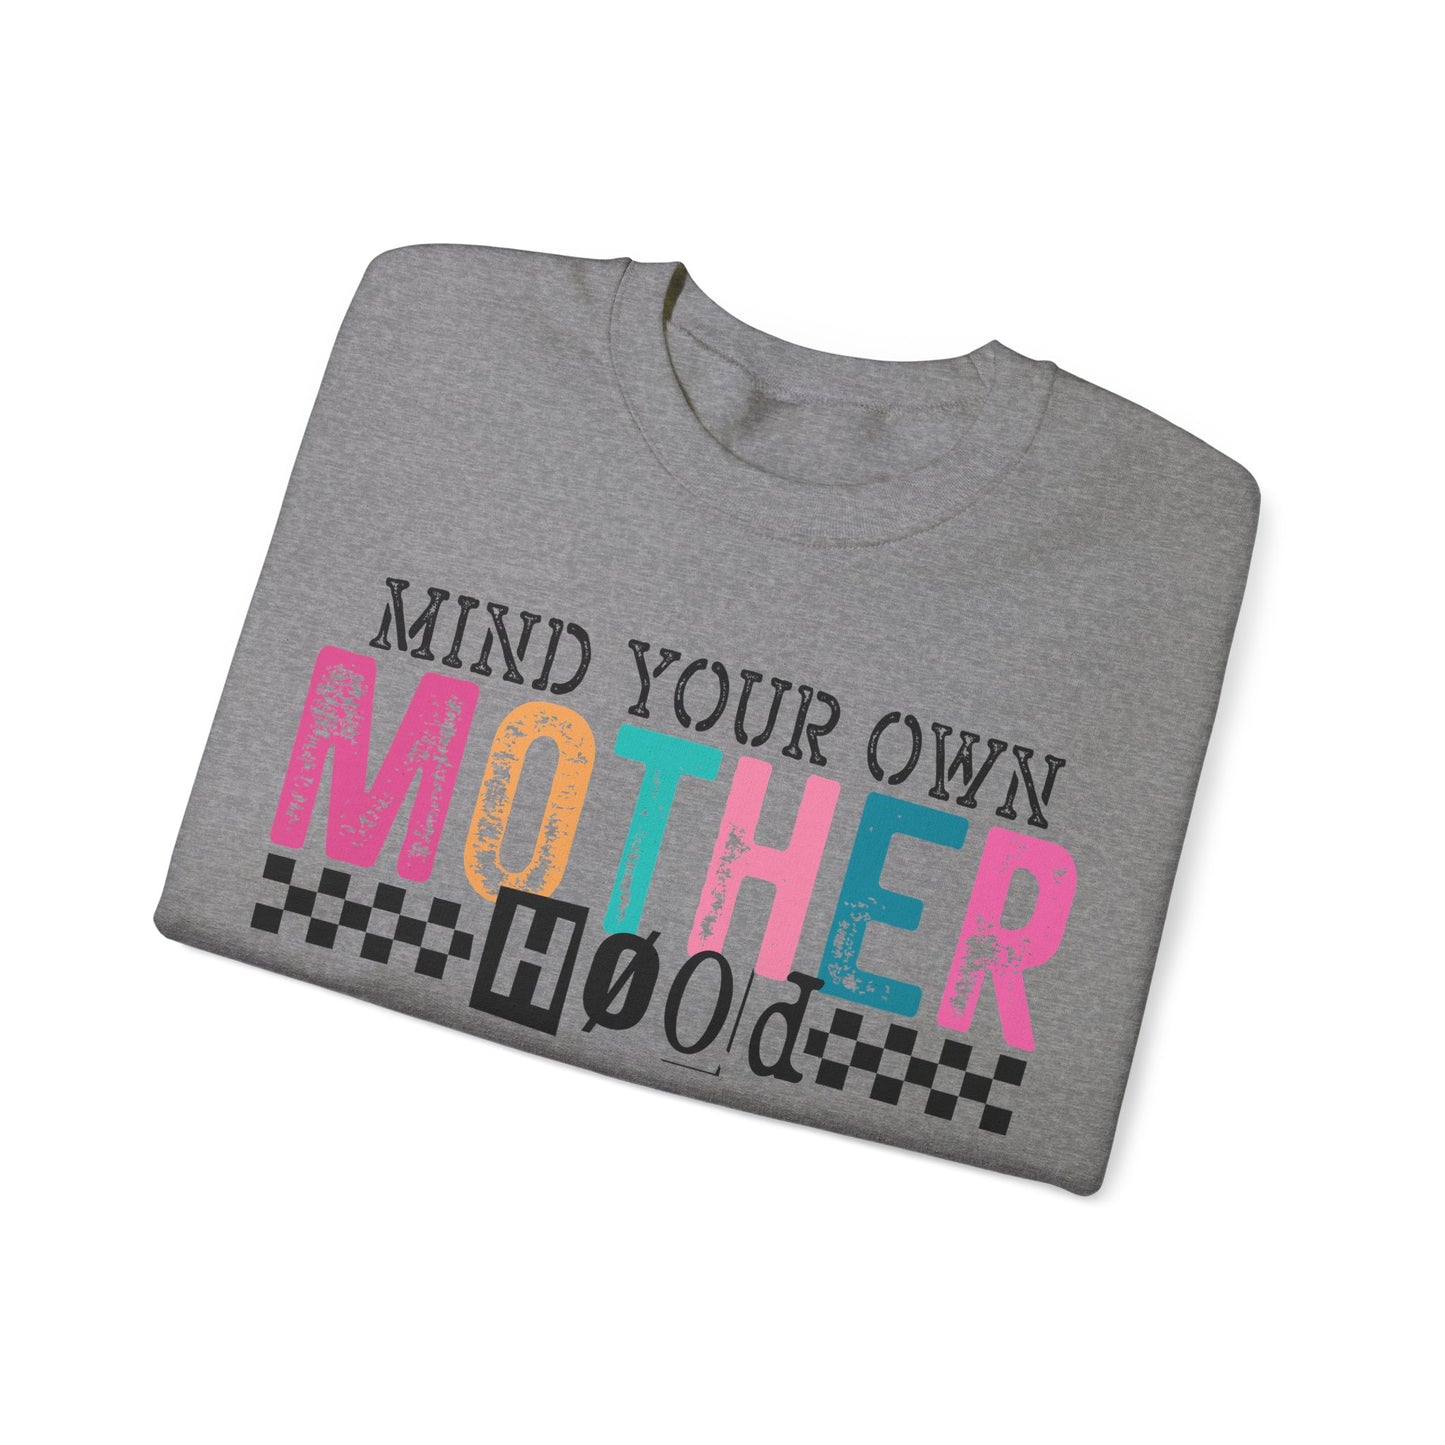 Mind Your Own Motherhood - Crewneck Sweatshirt